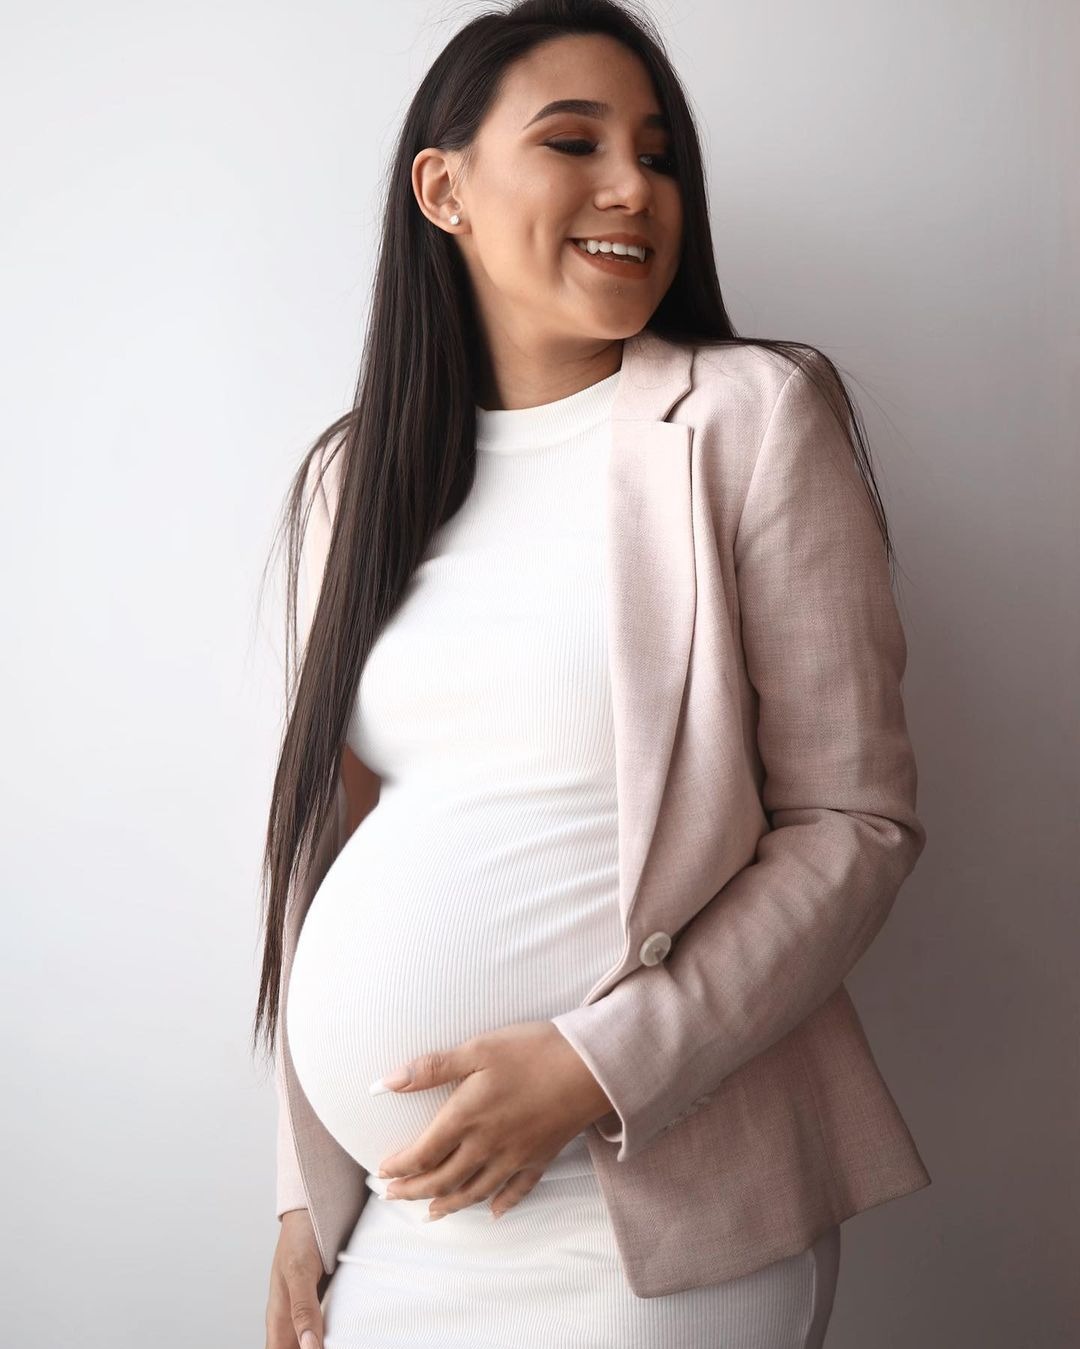 Aumentan los rumores de un posible embarazo de Samahara Lobatón /Foto: Instagram